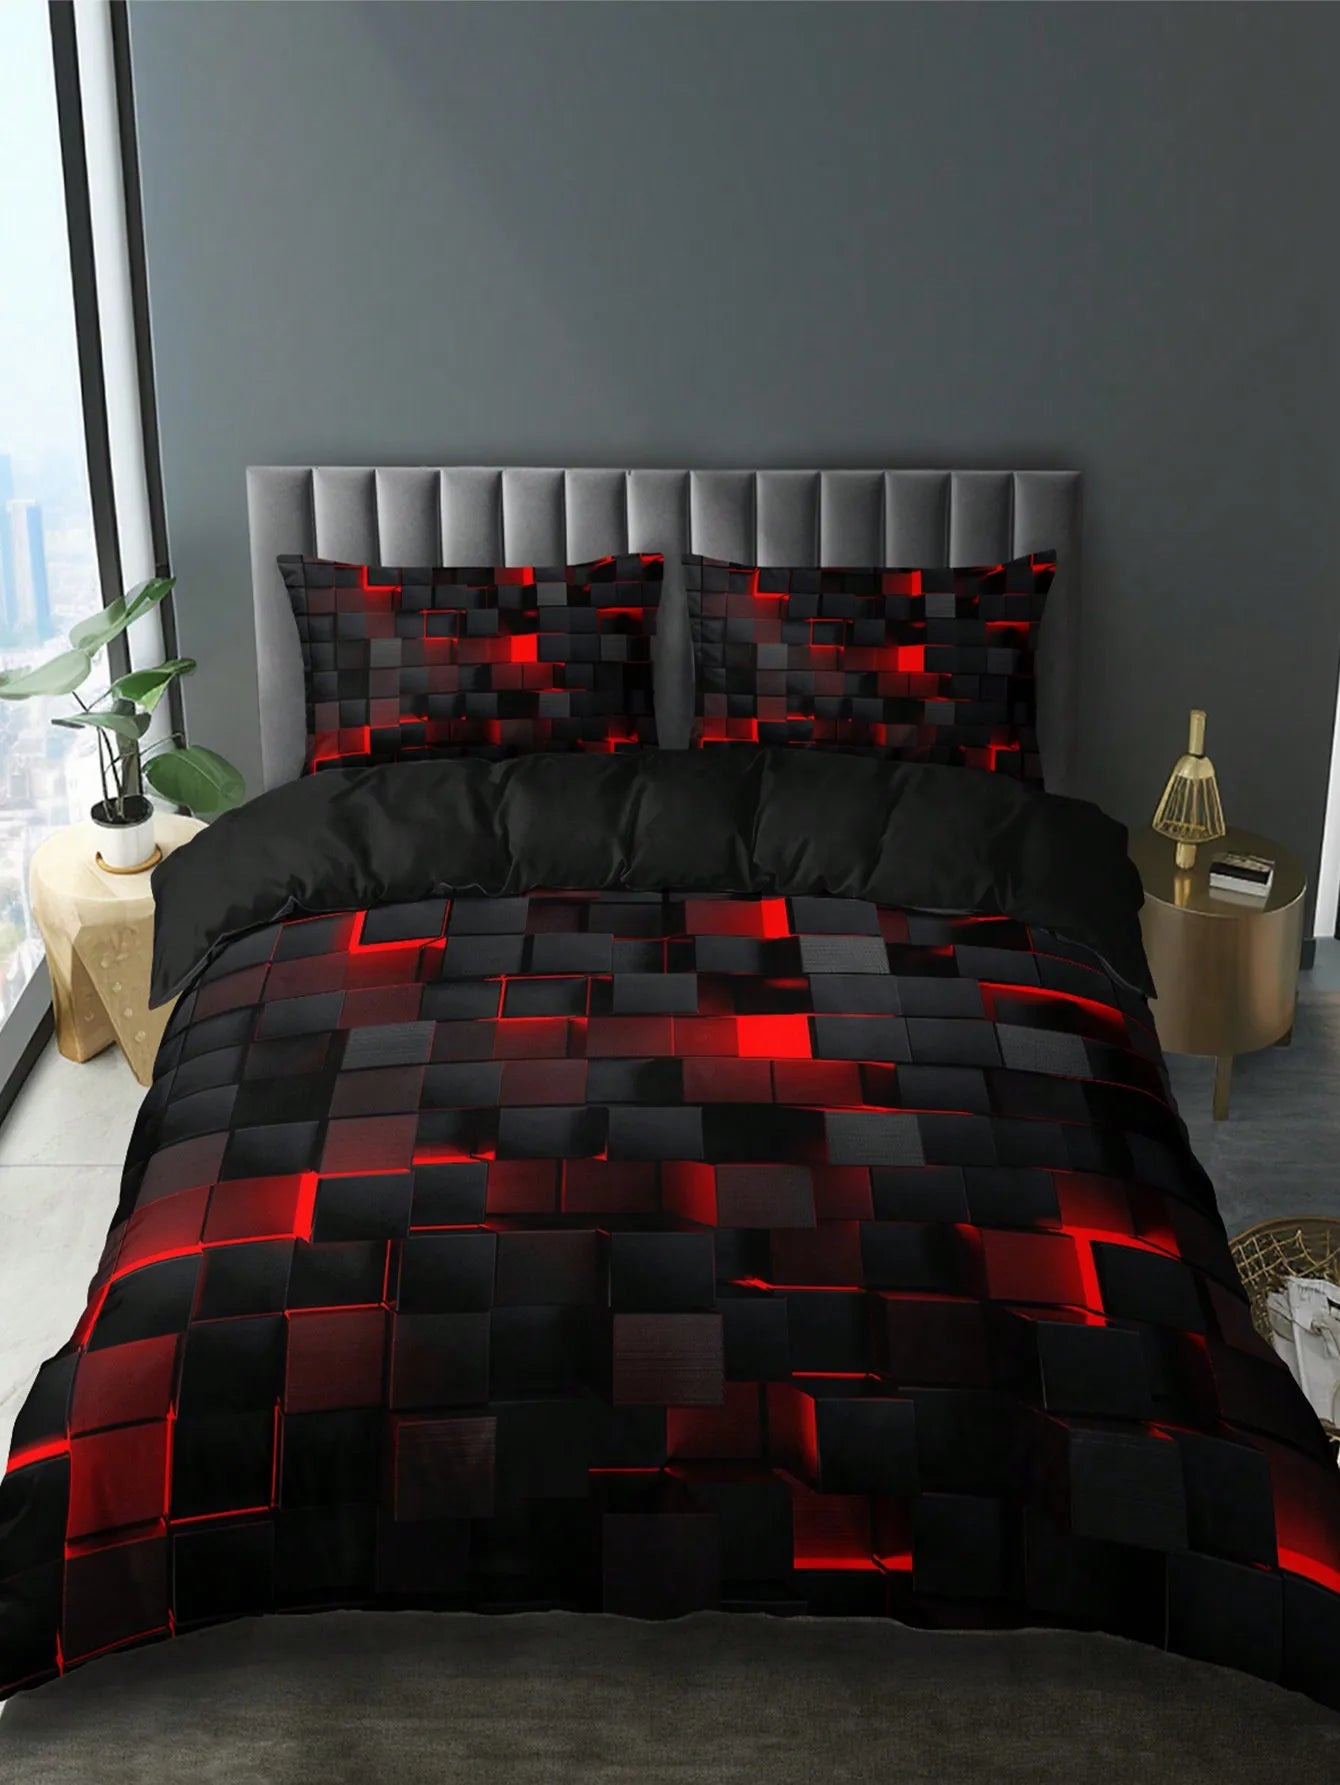 Stili i mbulesës së ngushëllimit të rrjetit të kuq të stilit të teknologjisë, përfshirë 1 mbulesë ngushëlluese dhe 2 jastëkësha të përshtatshme për përdorim në shtëpi dhe konvikt